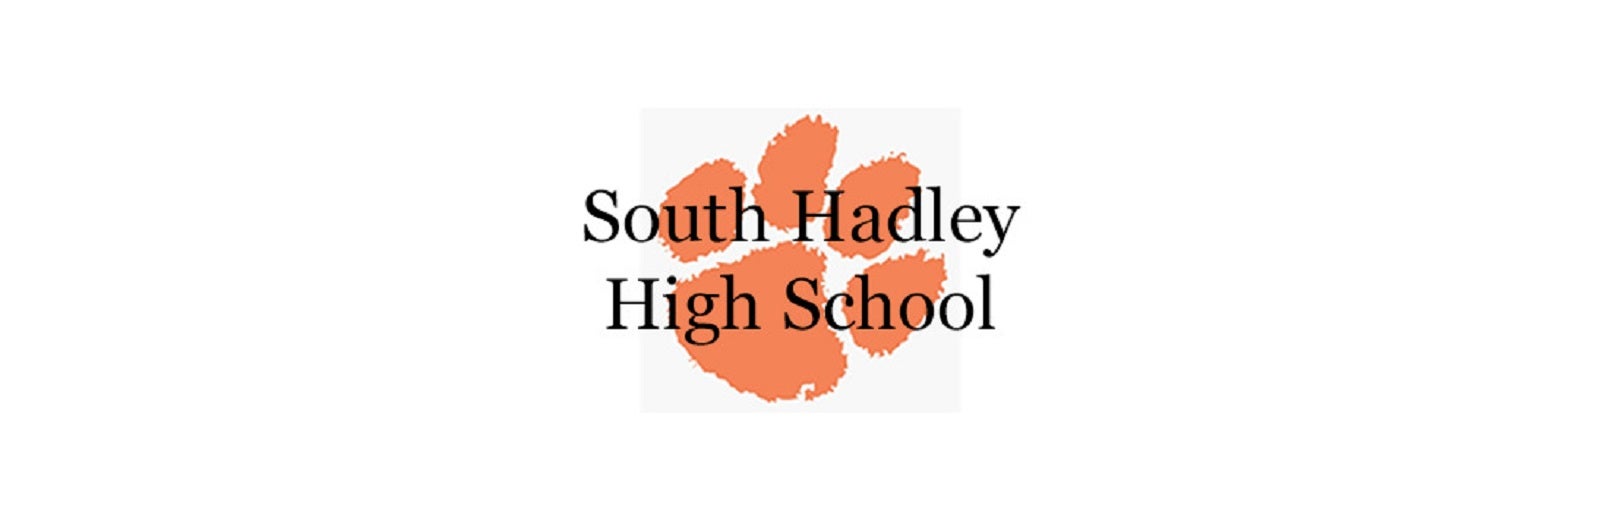 South Hadley High School Graduation